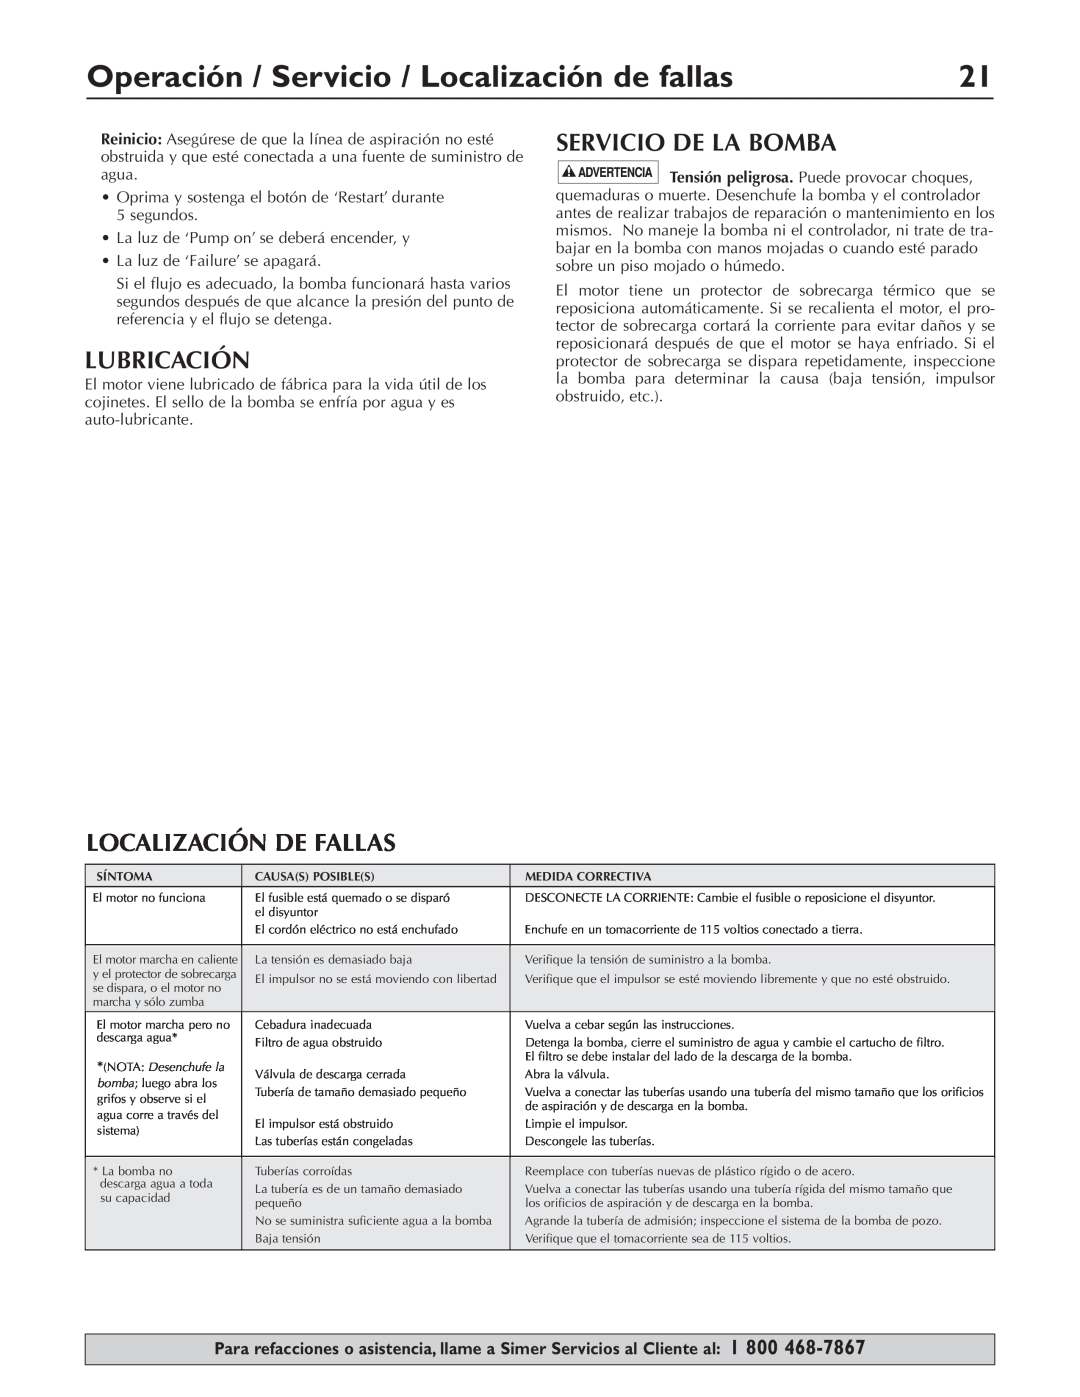 Simer Pumps 3075SS-01 owner manual Operación / Servicio / Localización de fallas, Lubricación, Localización De Fallas 